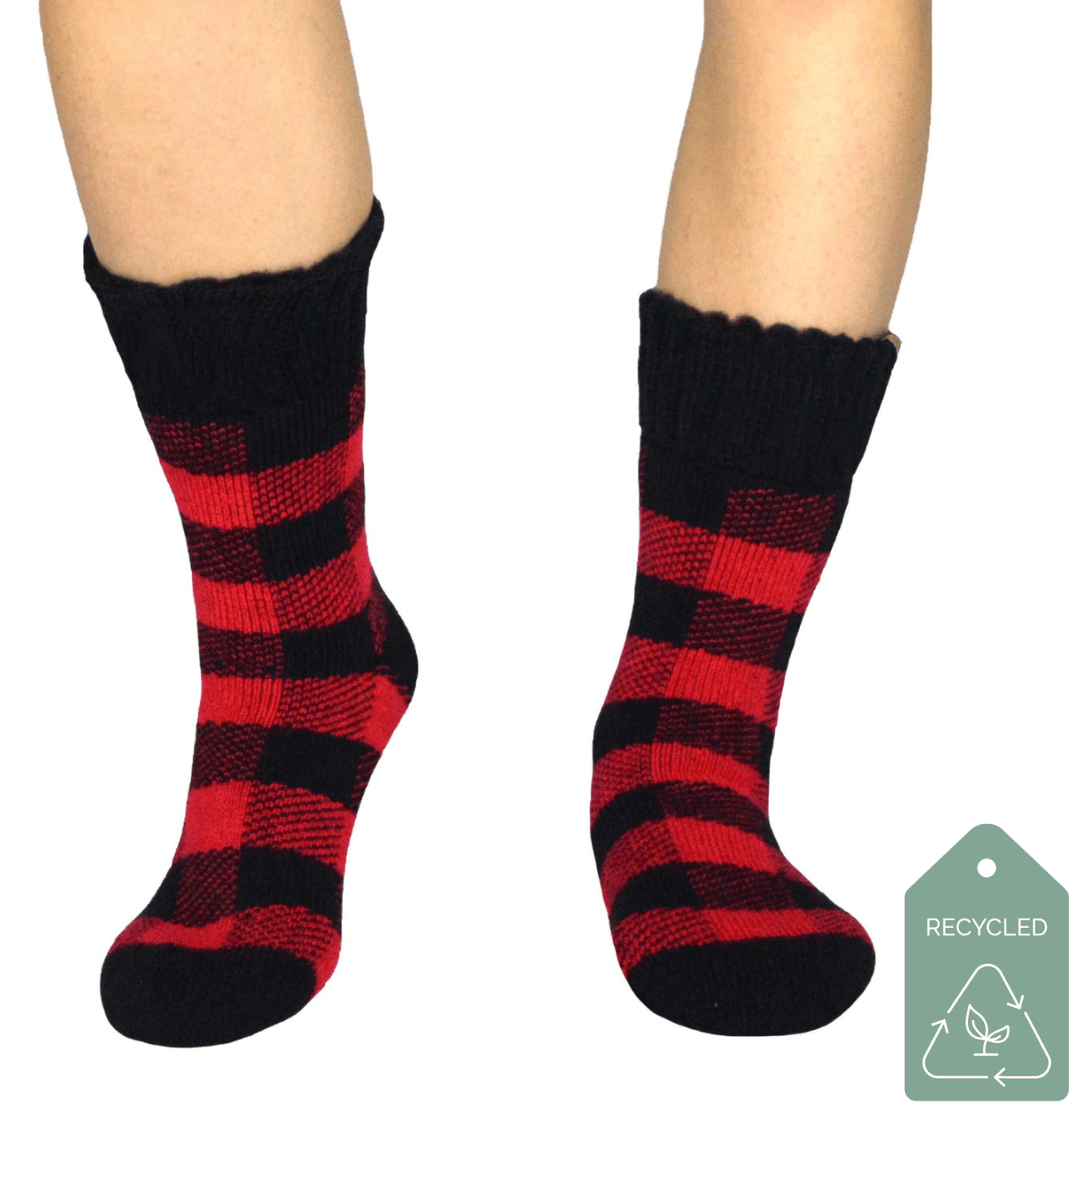 Buffalo Wool Socks - The Buffalo Wool Co. - boot-socks - boot-socks